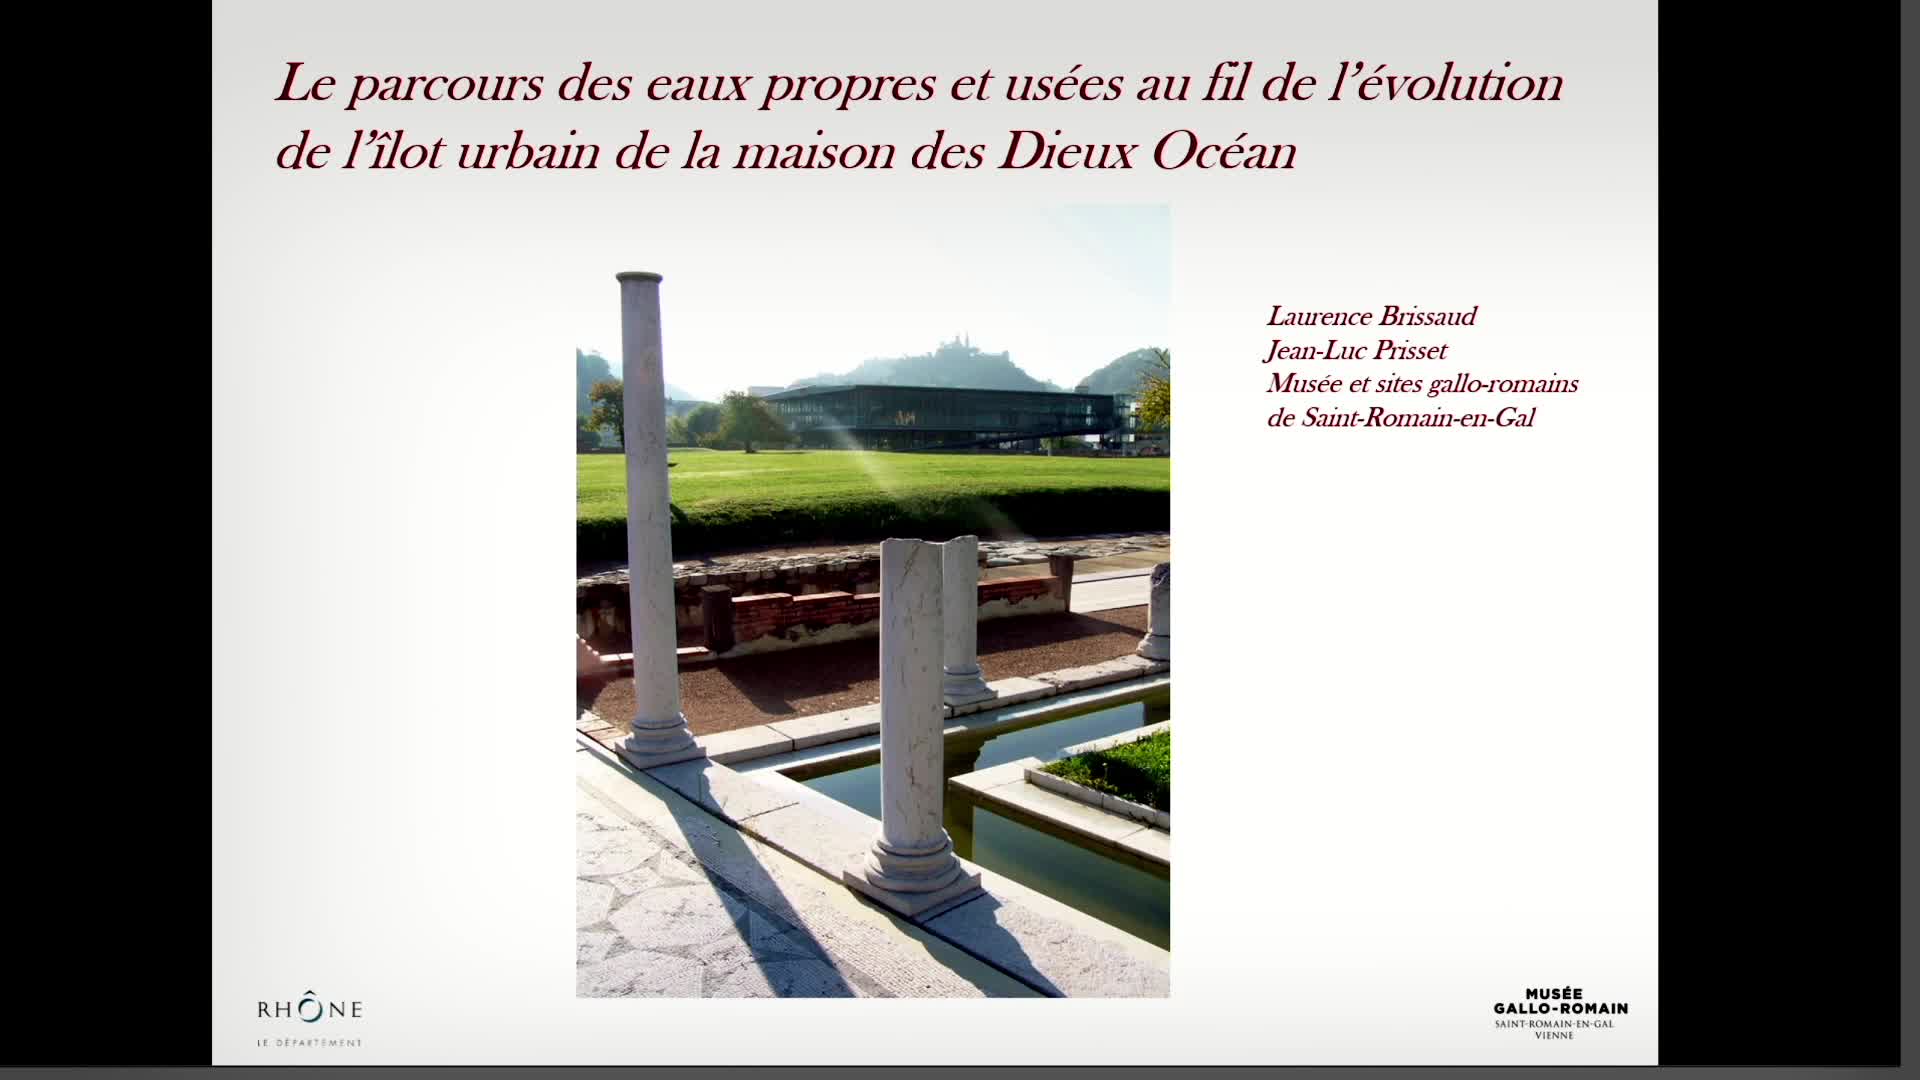 Le parcours des eaux propres et usées au fil de l’évolution de l’îlot urbain de la maison des Dieux Océan (îlot A, Saint-Romain-en-Gal, Rhône)